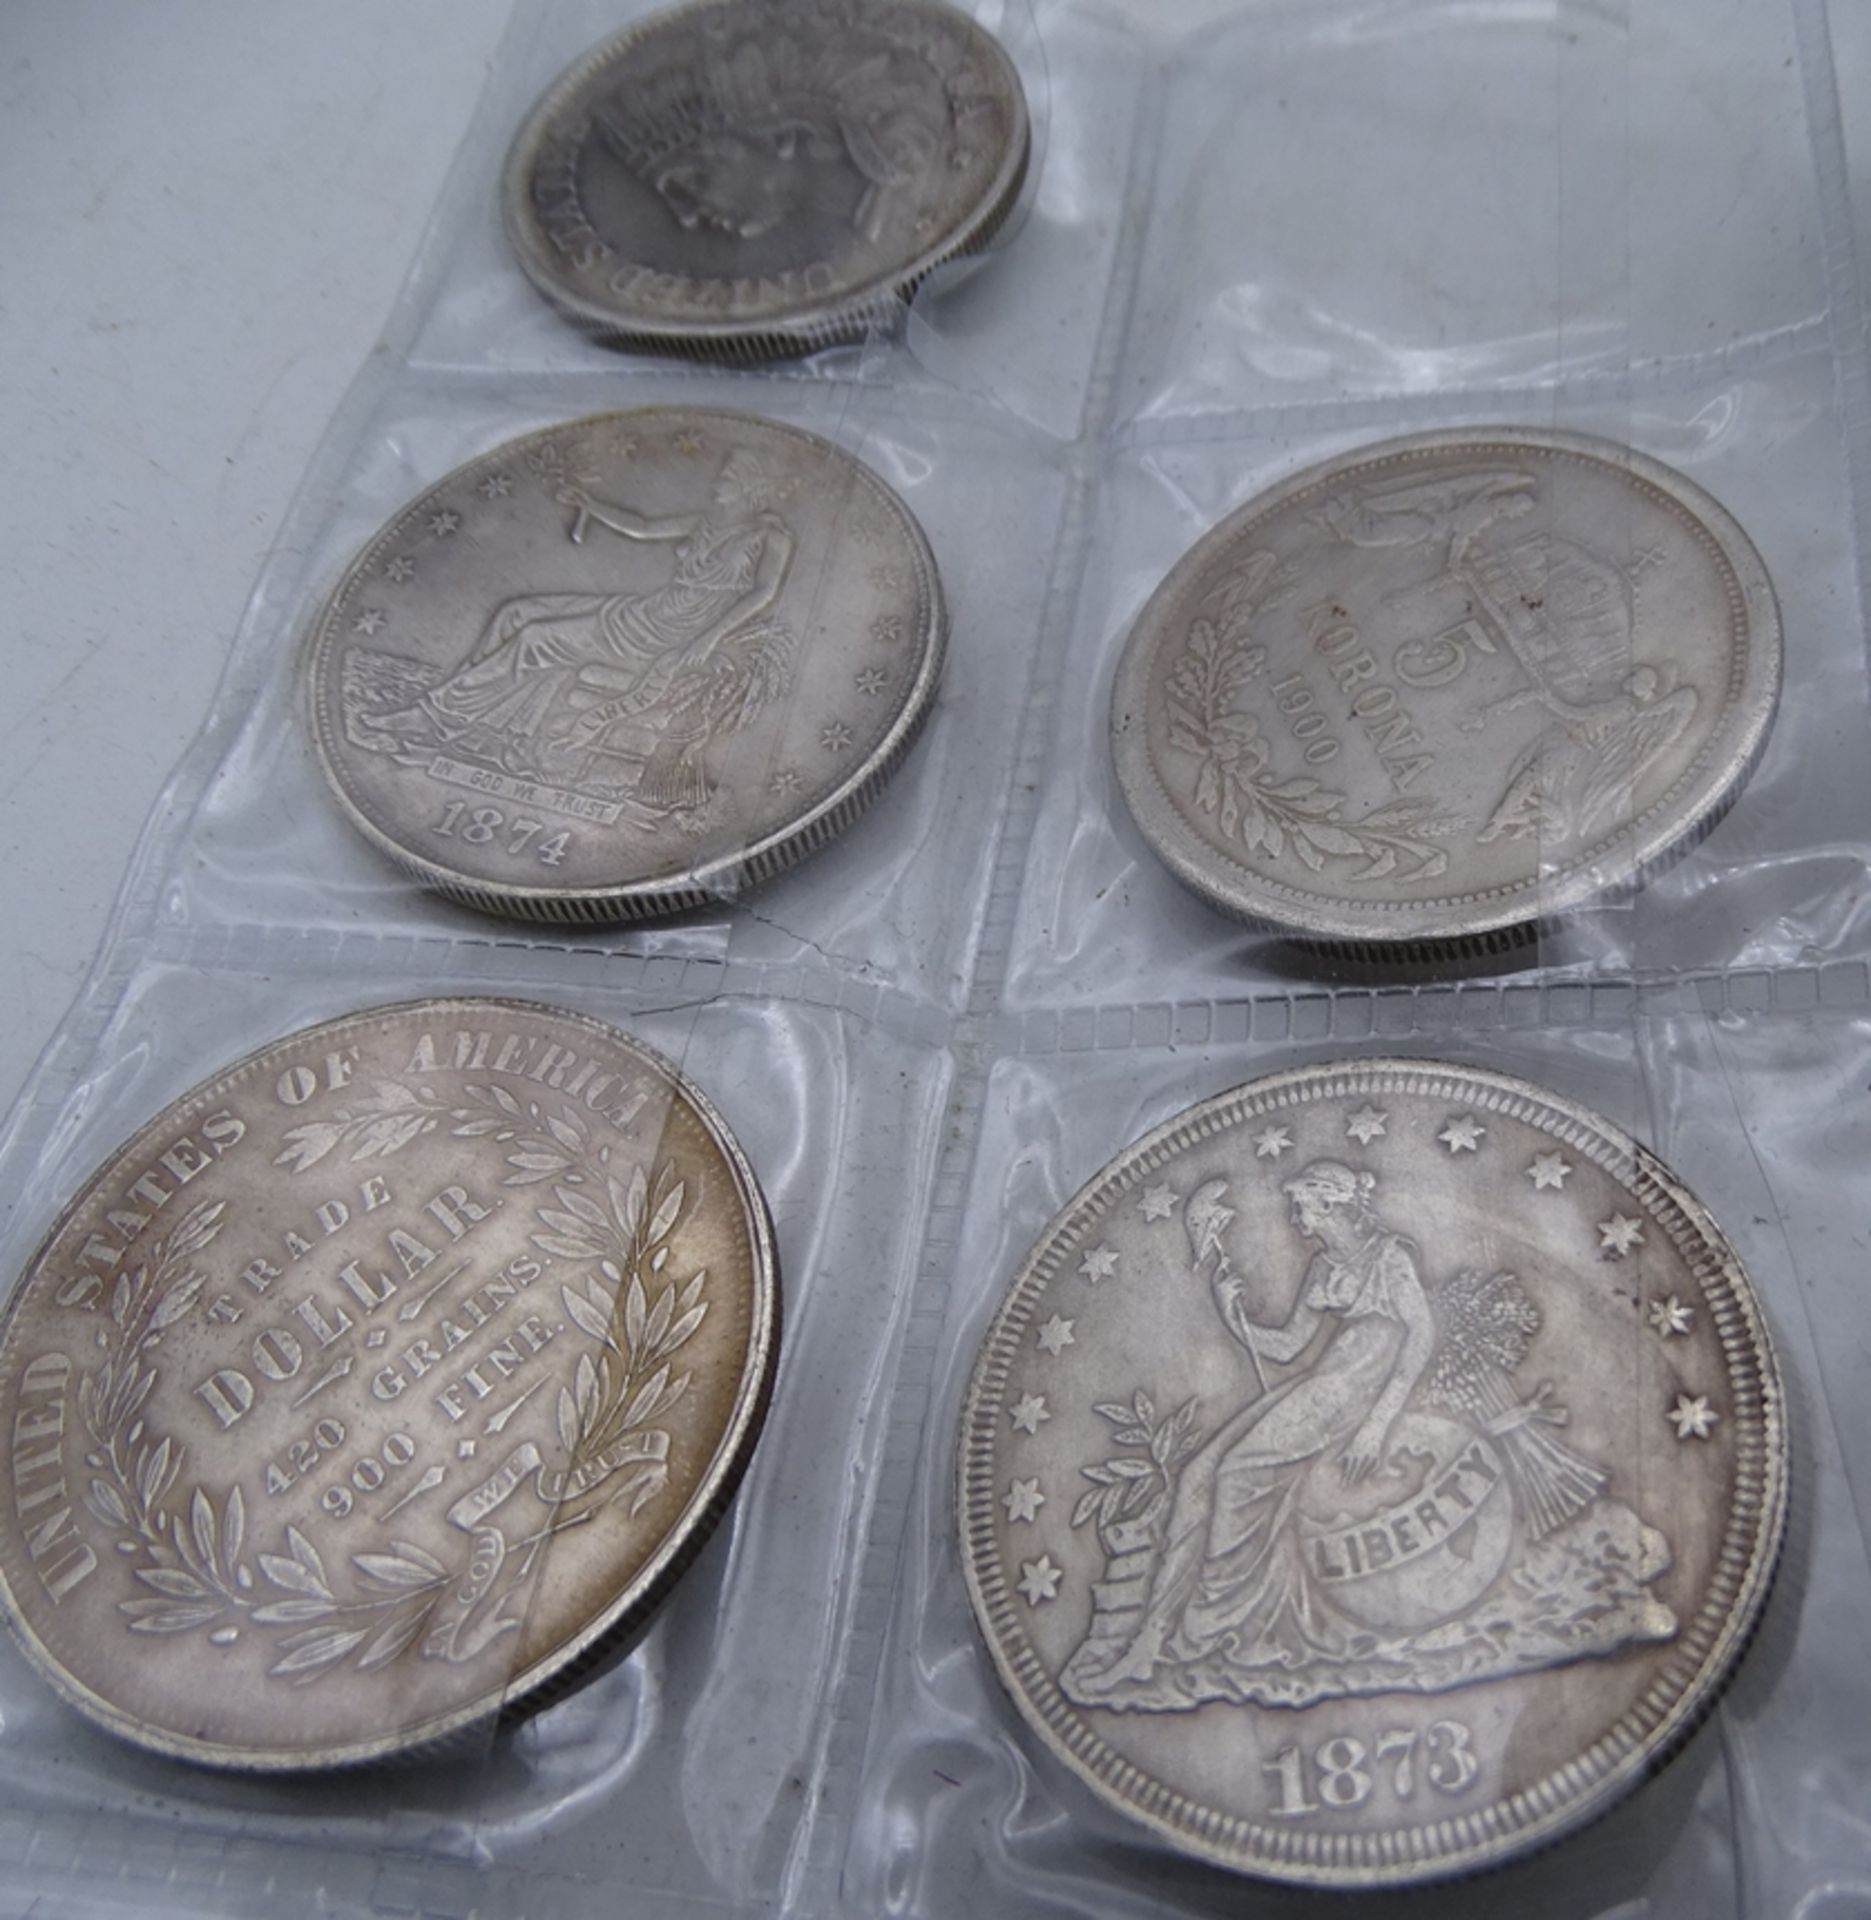 11x alte Silbermünzen-Kopien, Dollar, Rubel, Gulden, keines ist aus Silber, alle Fakes und versilbe - Bild 3 aus 8